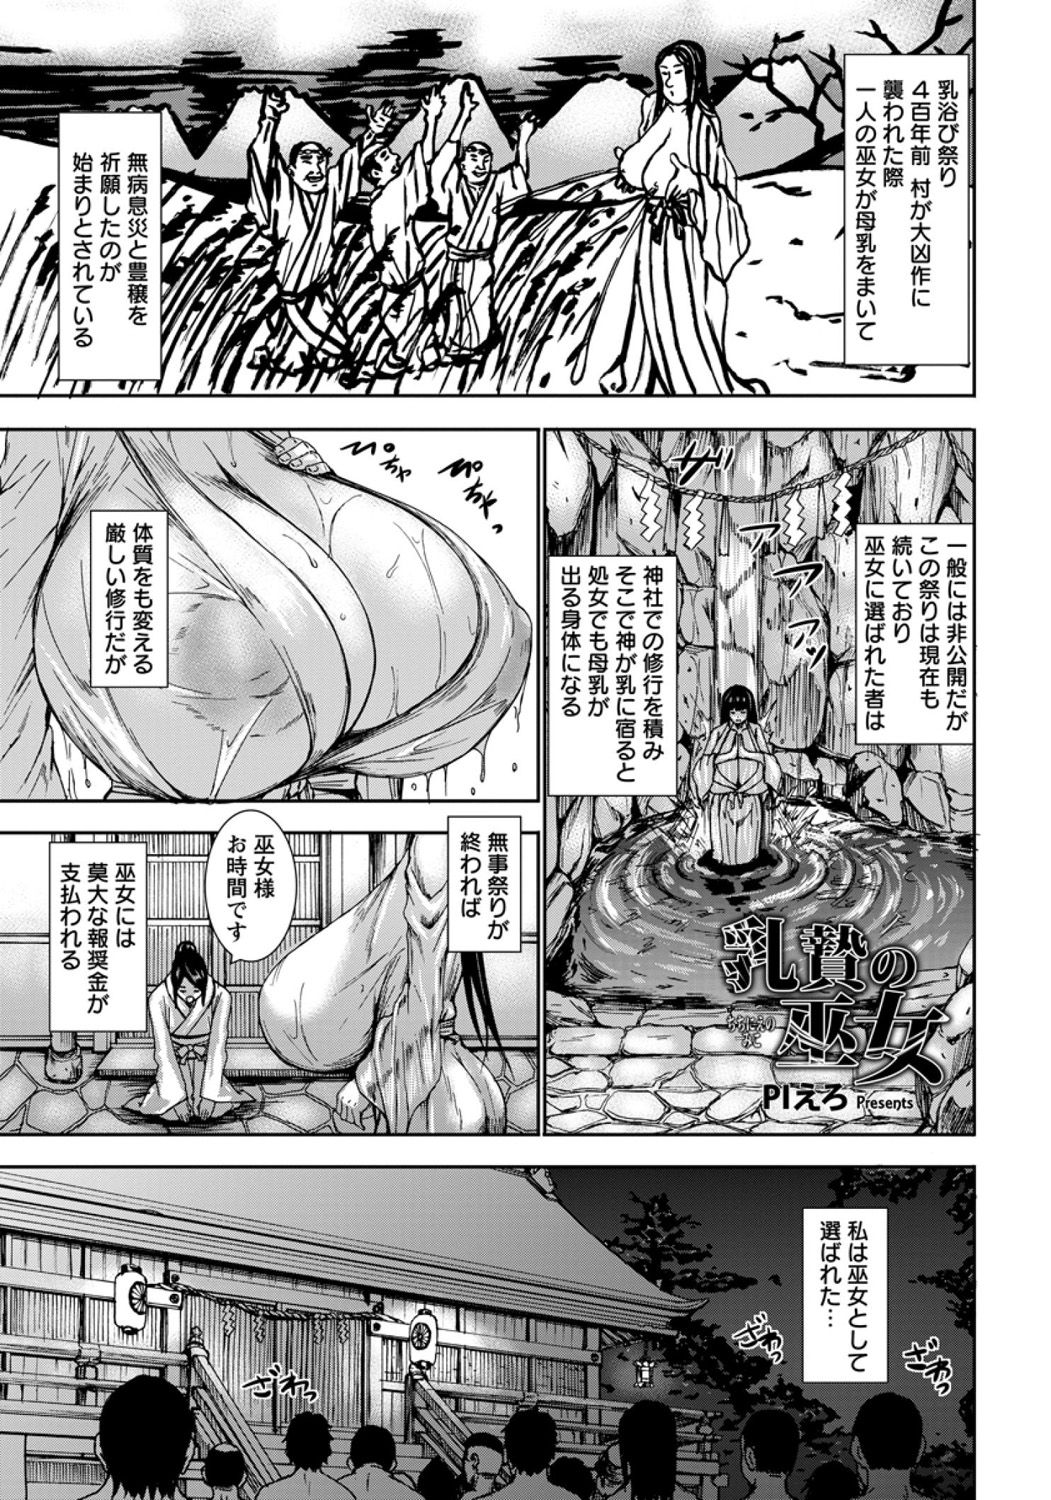 [PIero] Chichinie no Miko (COMIC Angel Club 2014-08) [Digital] page 1 full